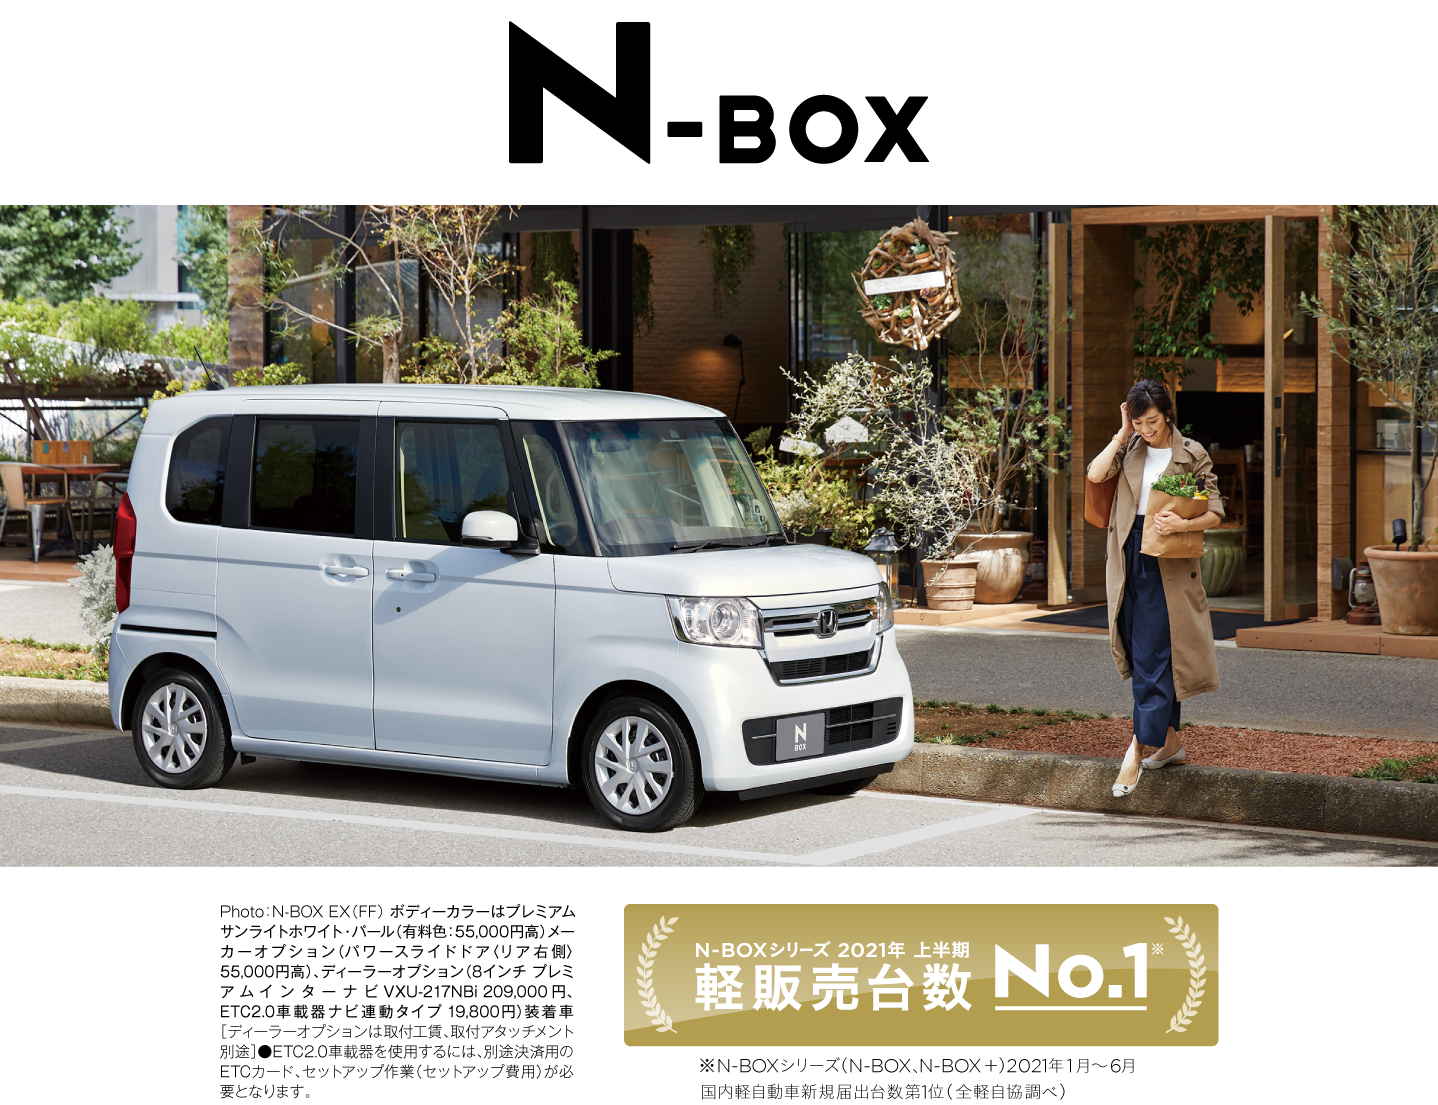 N-BOX Car KV